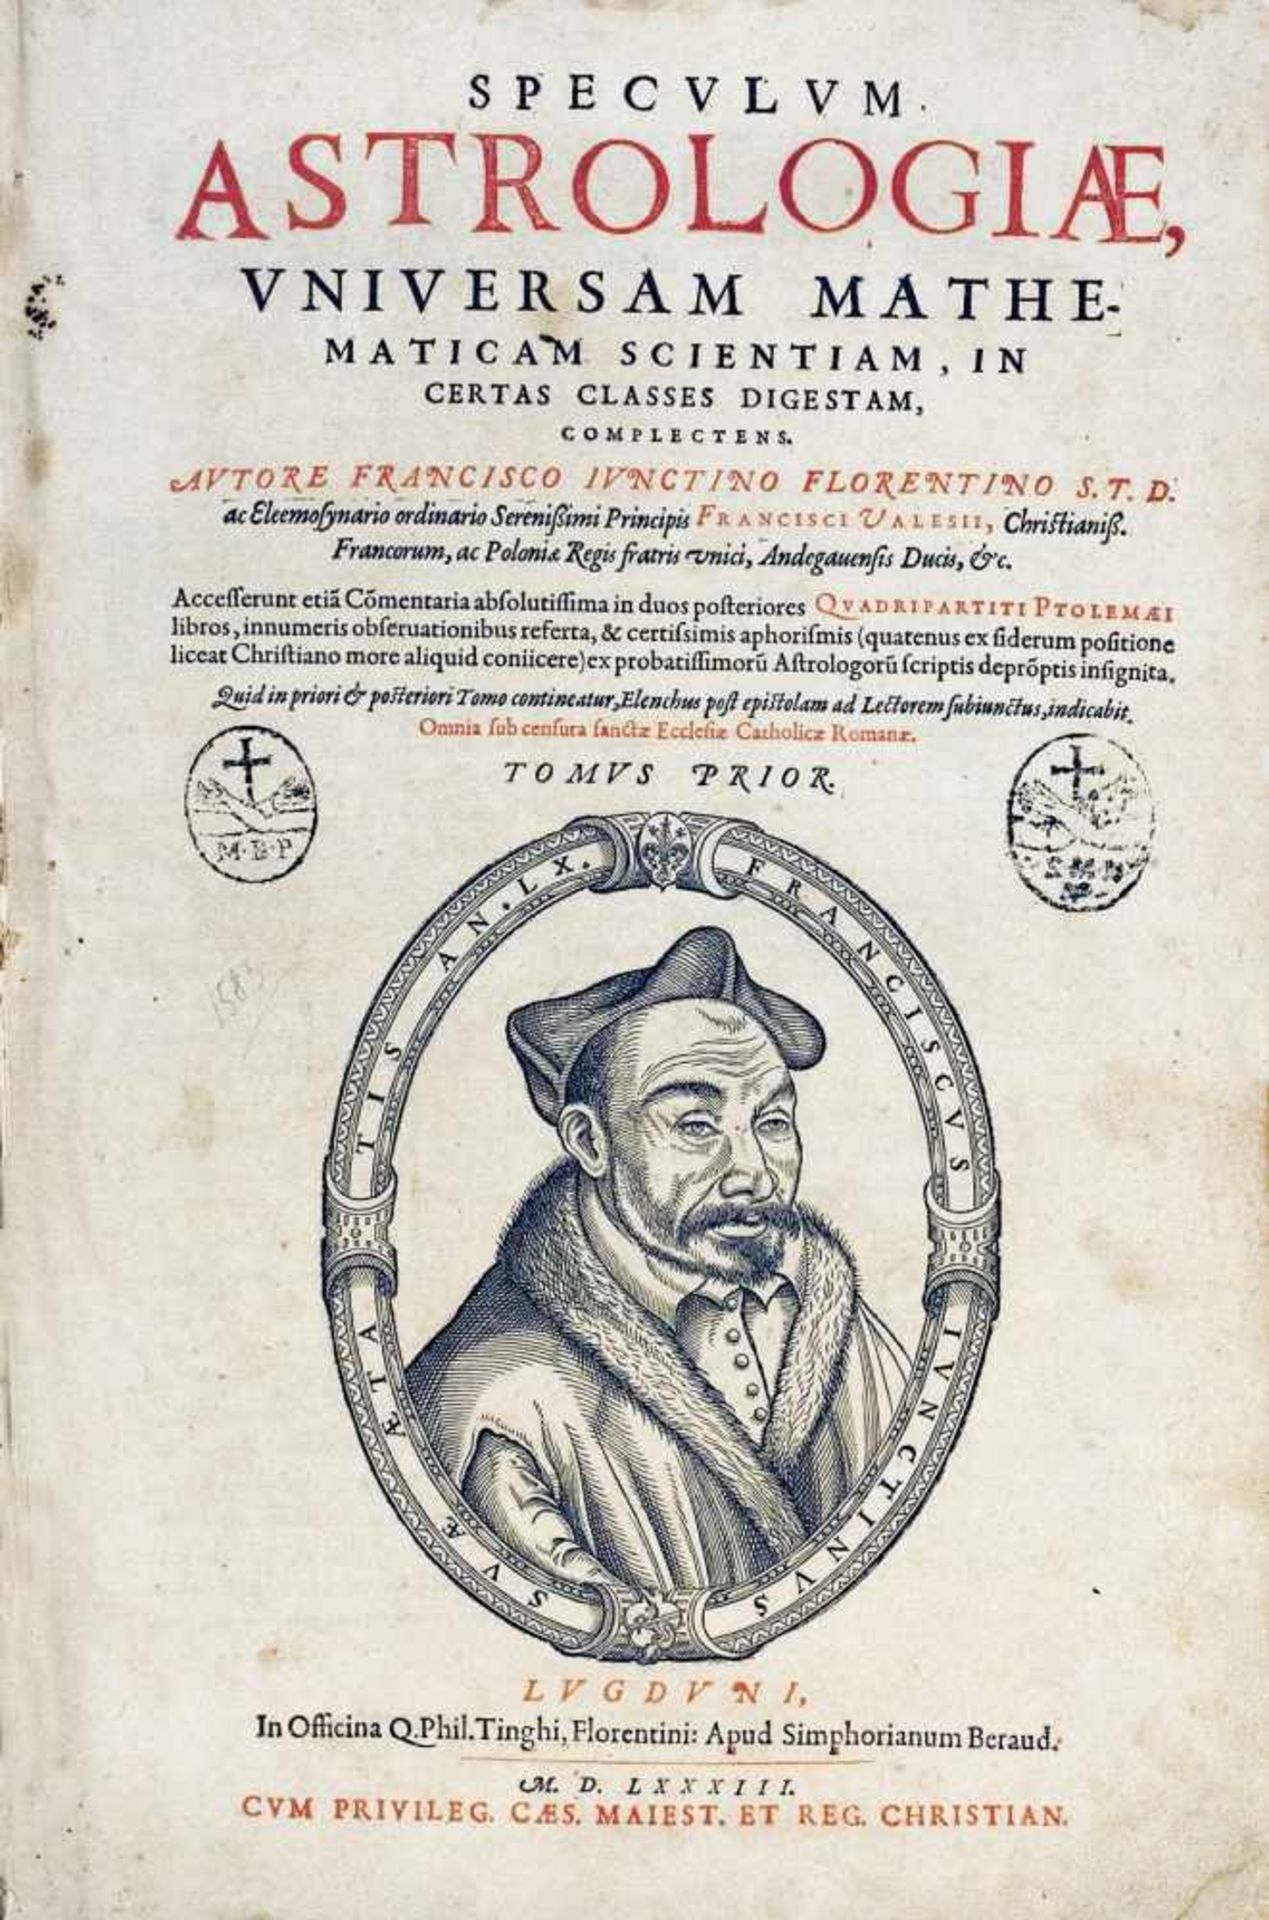 Astrologie - Francesco Giunti. Speculum Astrologiæ, universam mathematicam scientiam, in certas